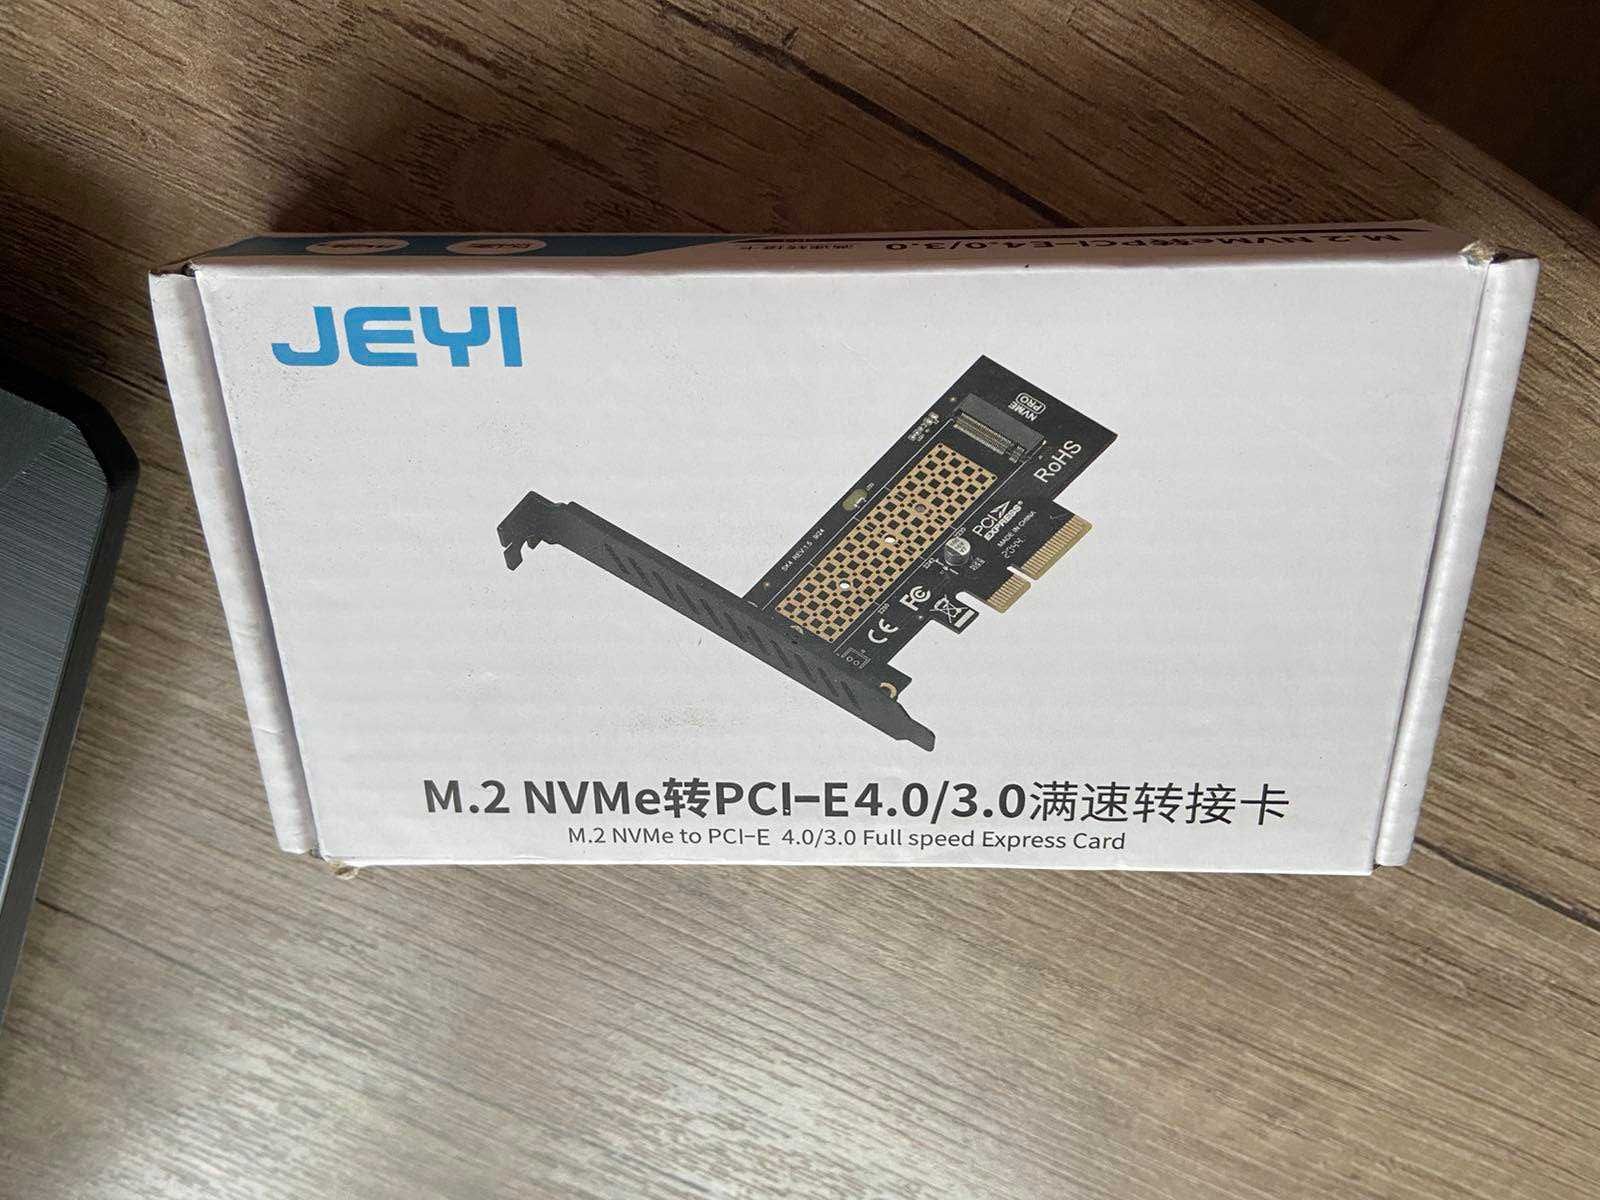 Карман з M.2 NVMe to PCI-E новий, запакований, не відкривався